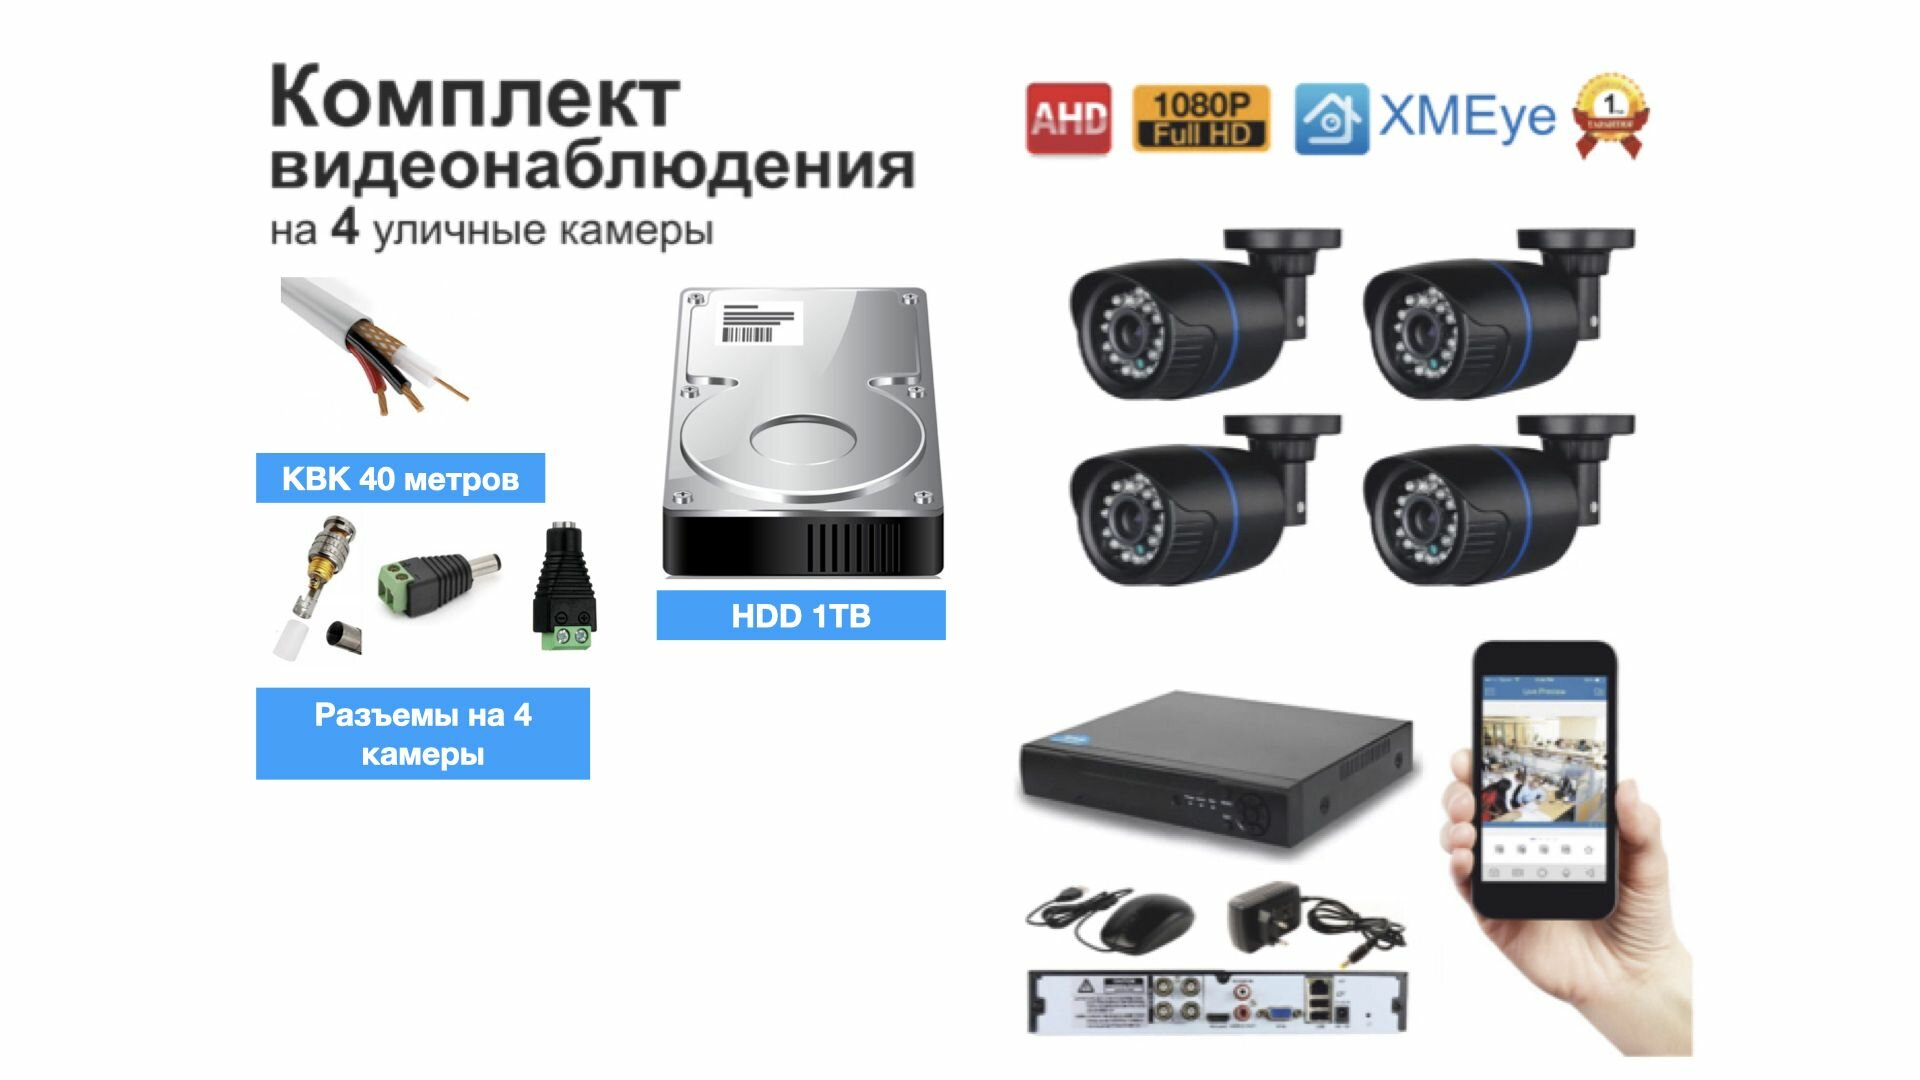 Полный готовый комплект видеонаблюдения на 4 камеры Full HD (KIT4AHD100B1080P_HDD1TB_KVK)